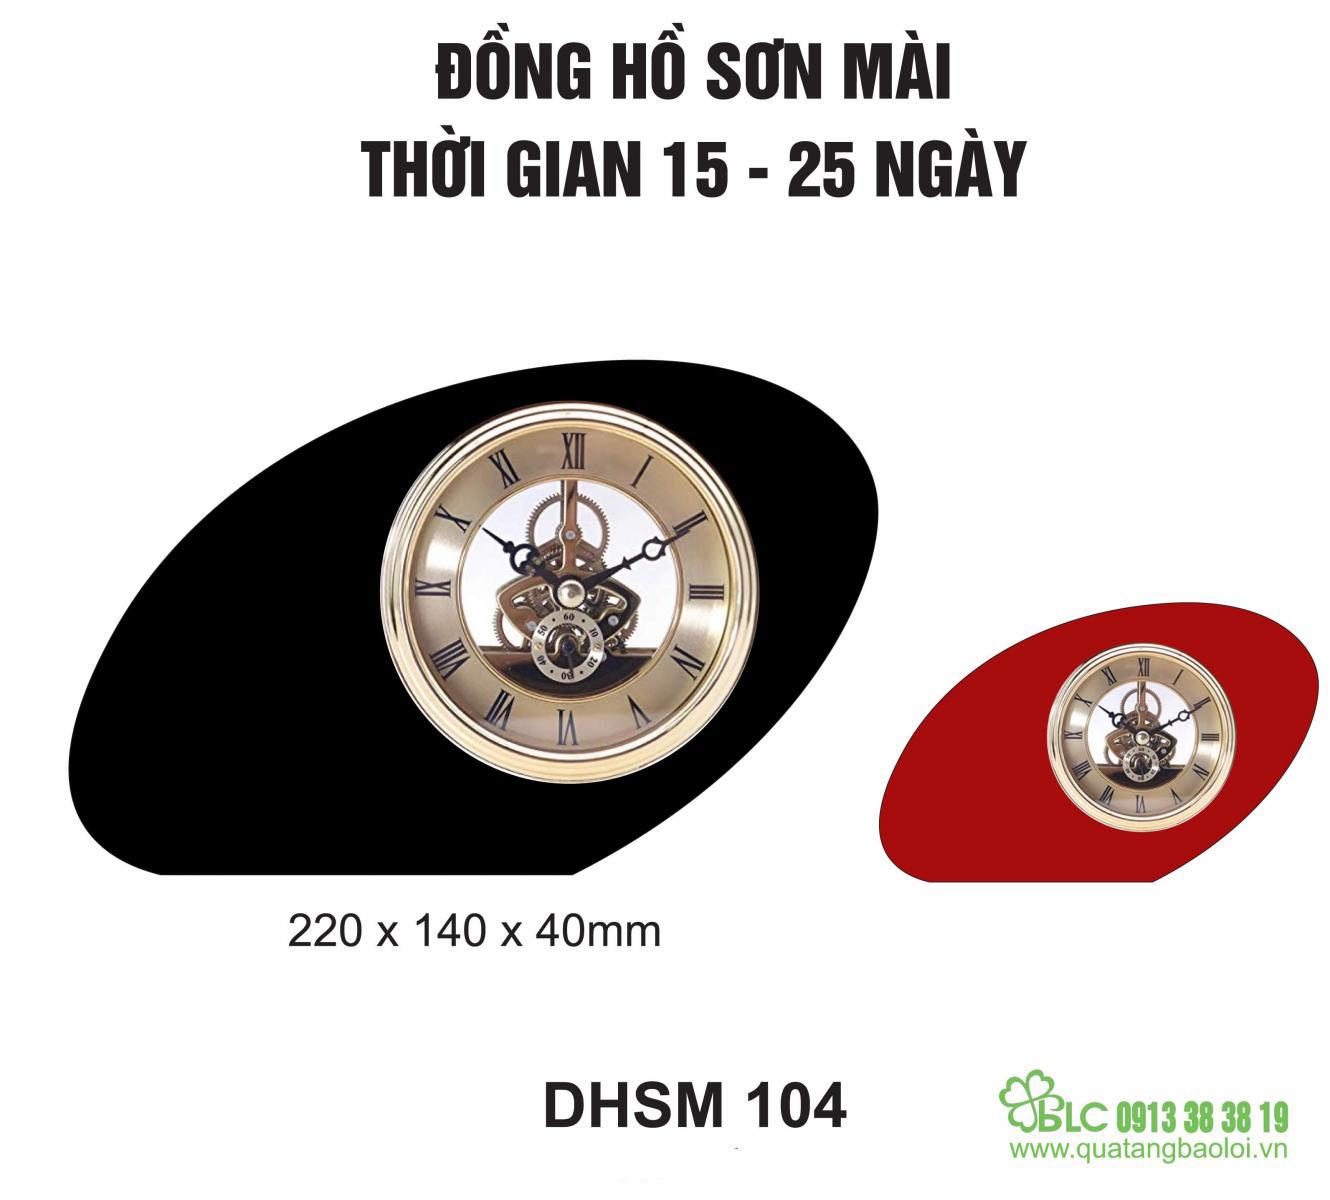 Đồng hồ để bàn sơn mài Hải Phòng - DHSM 104